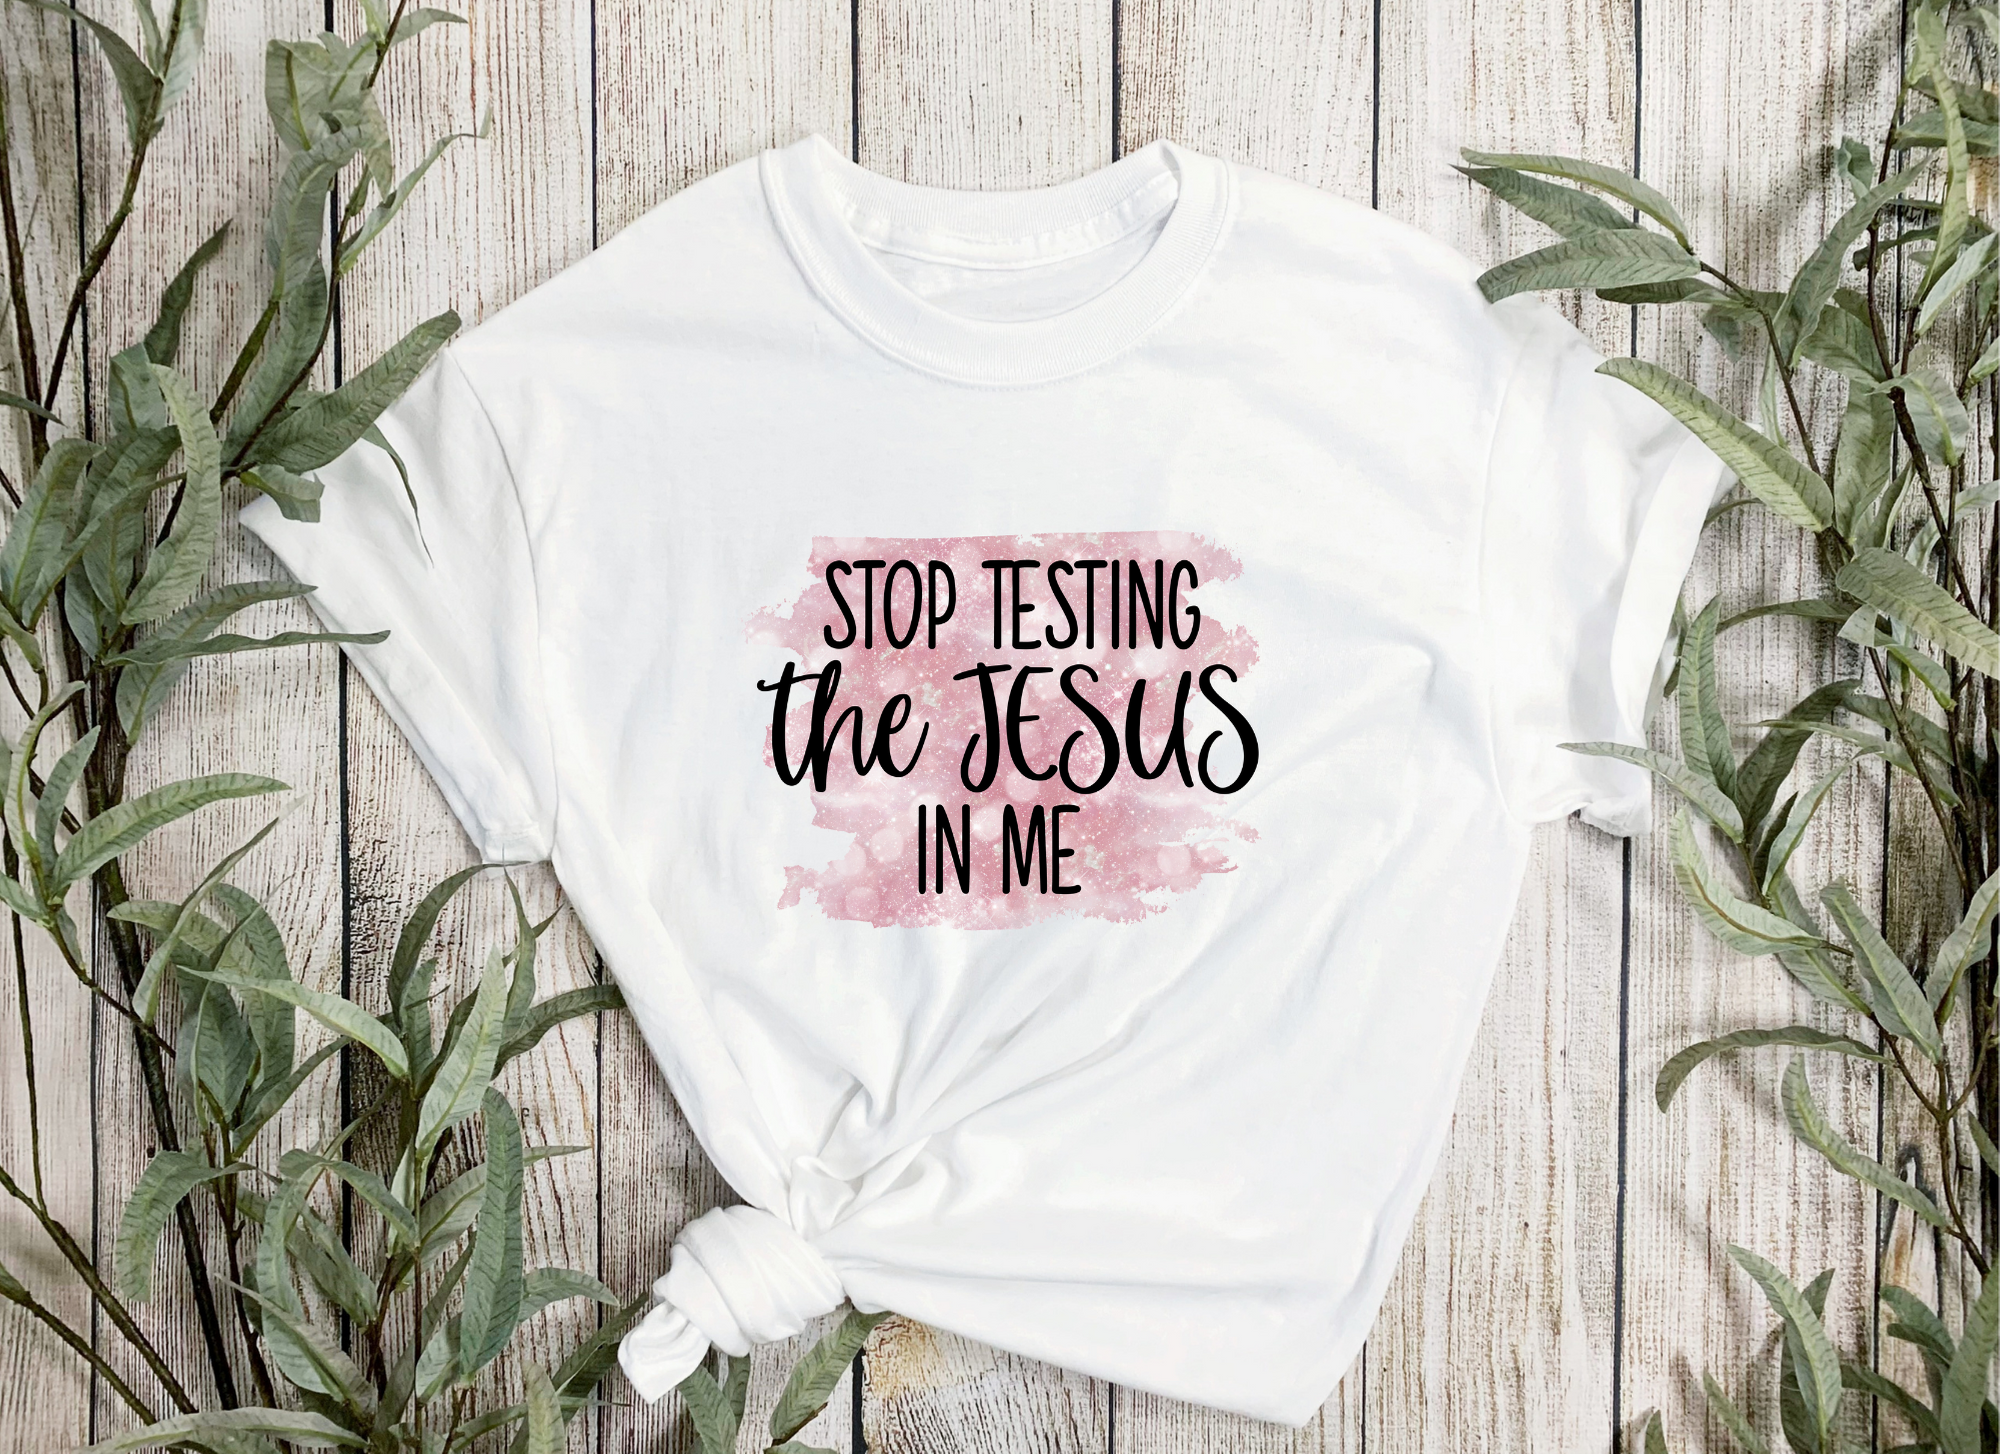 Stop testing the Jesus in me